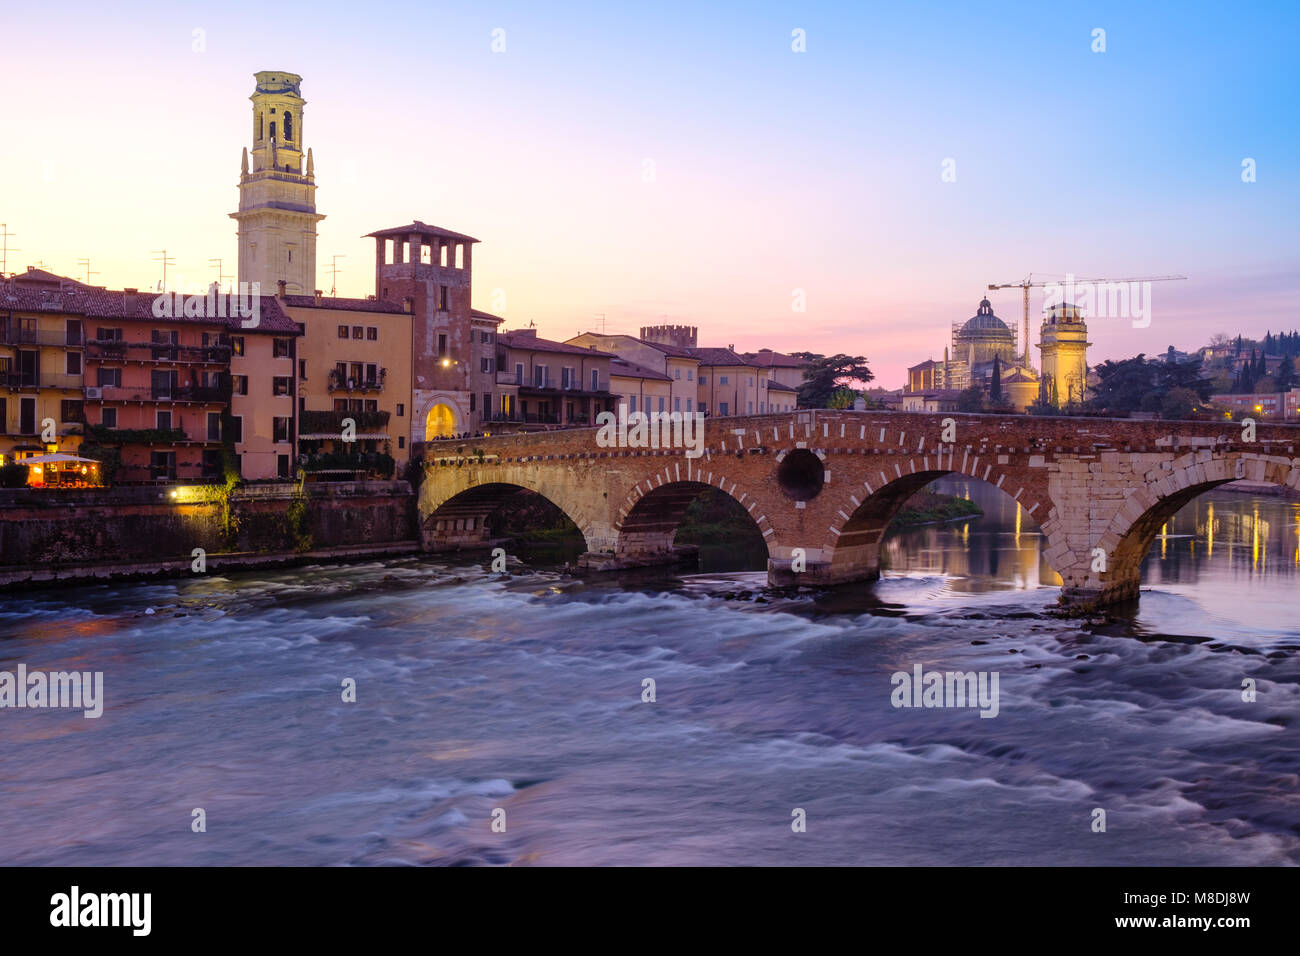 Bild von Verona. Pietra Brücke über die Etsch nach Sonnenuntergang, Verona, Italien. Stockfoto